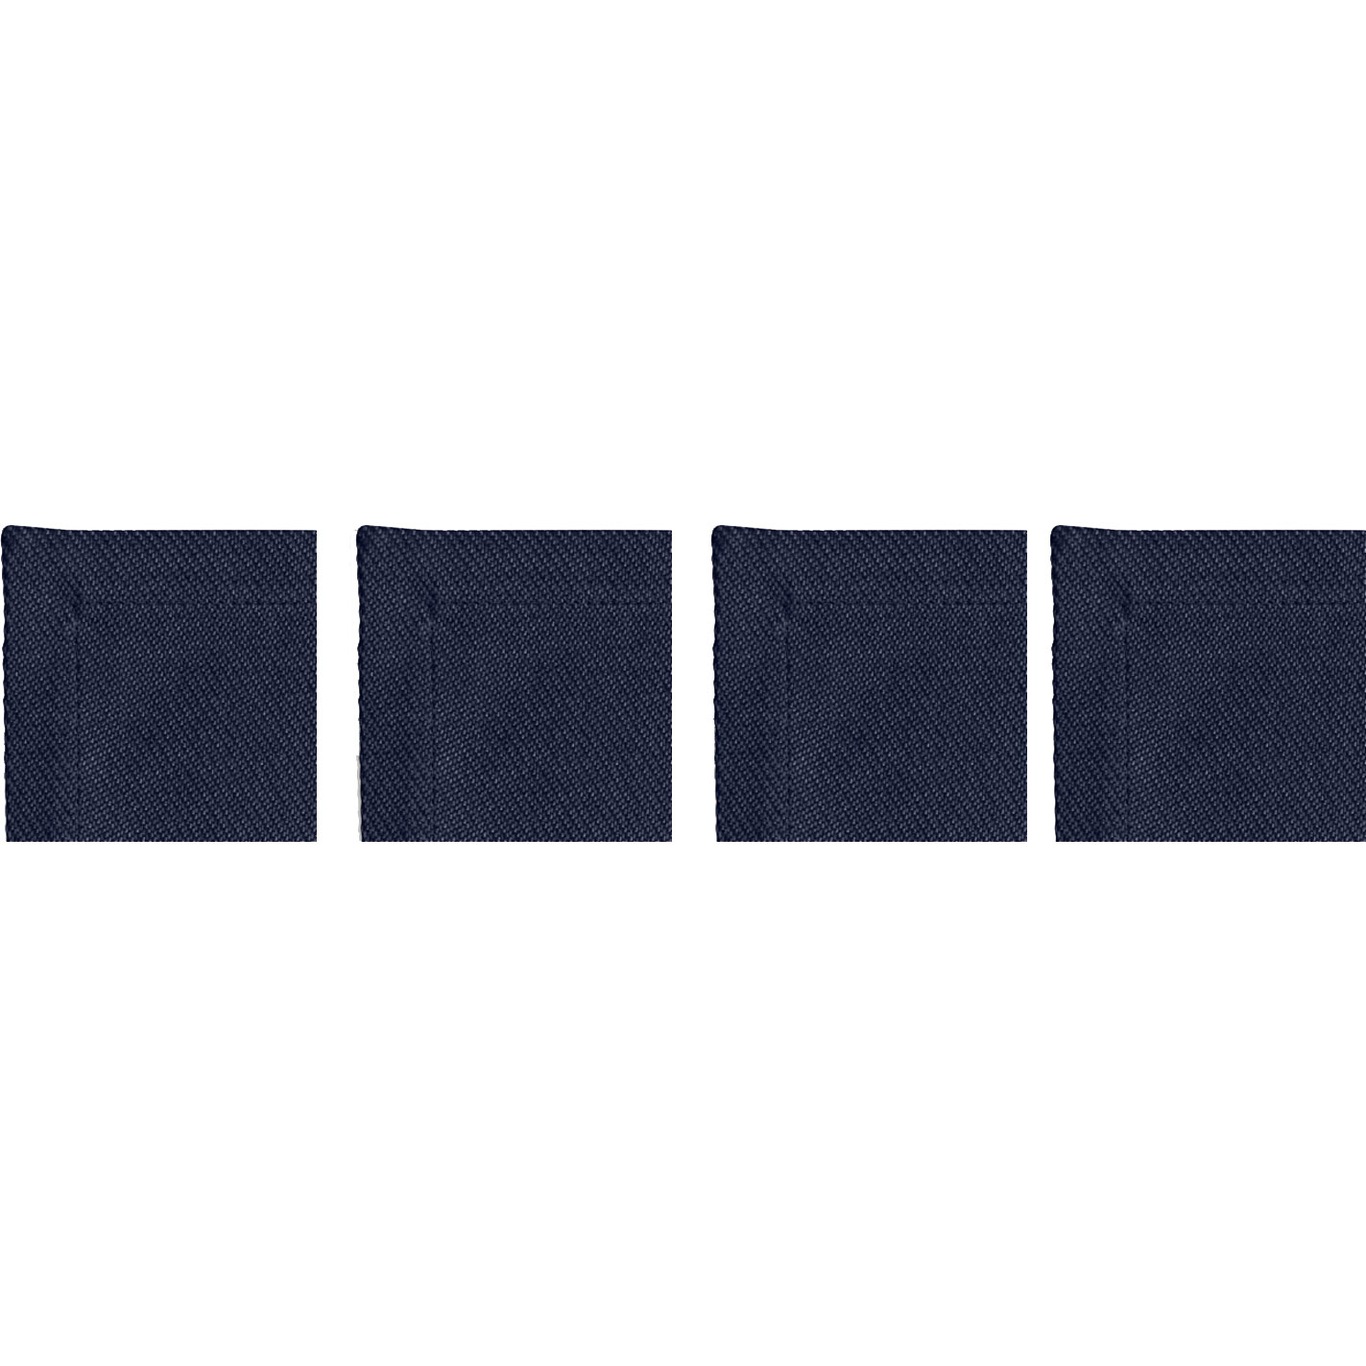 Plain Lasinaluset 10x10 cm 4-pakkaus, Laivastonsininen